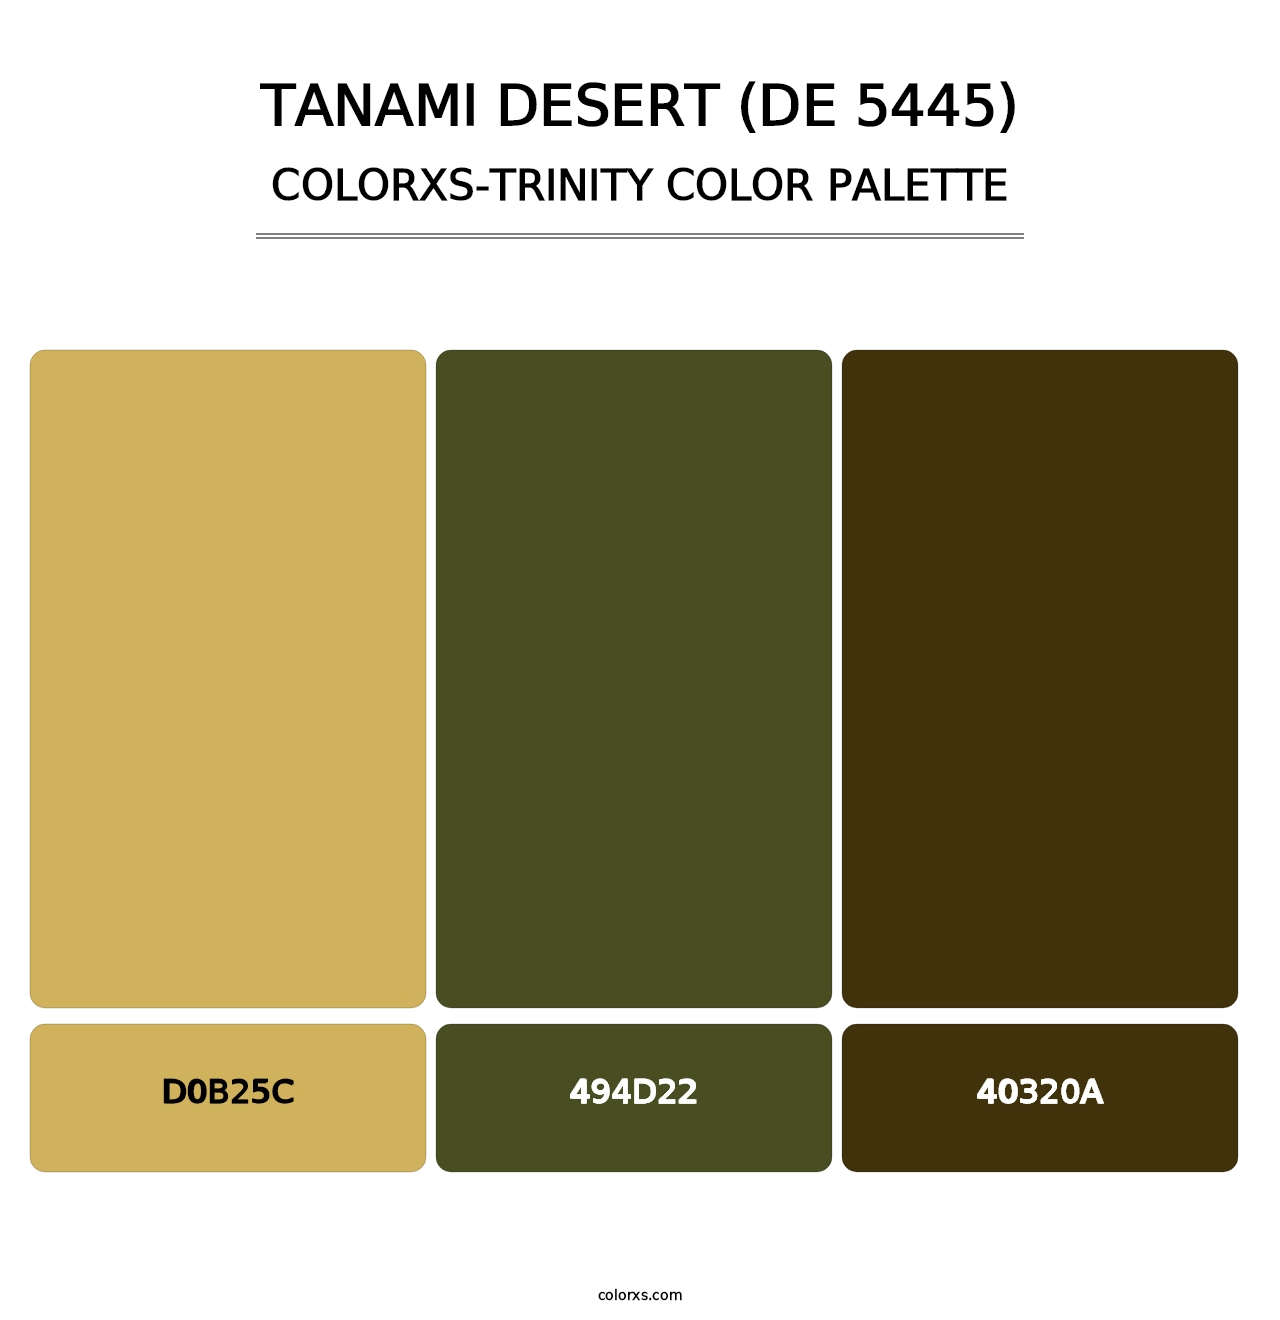 Tanami Desert (DE 5445) - Colorxs Trinity Palette